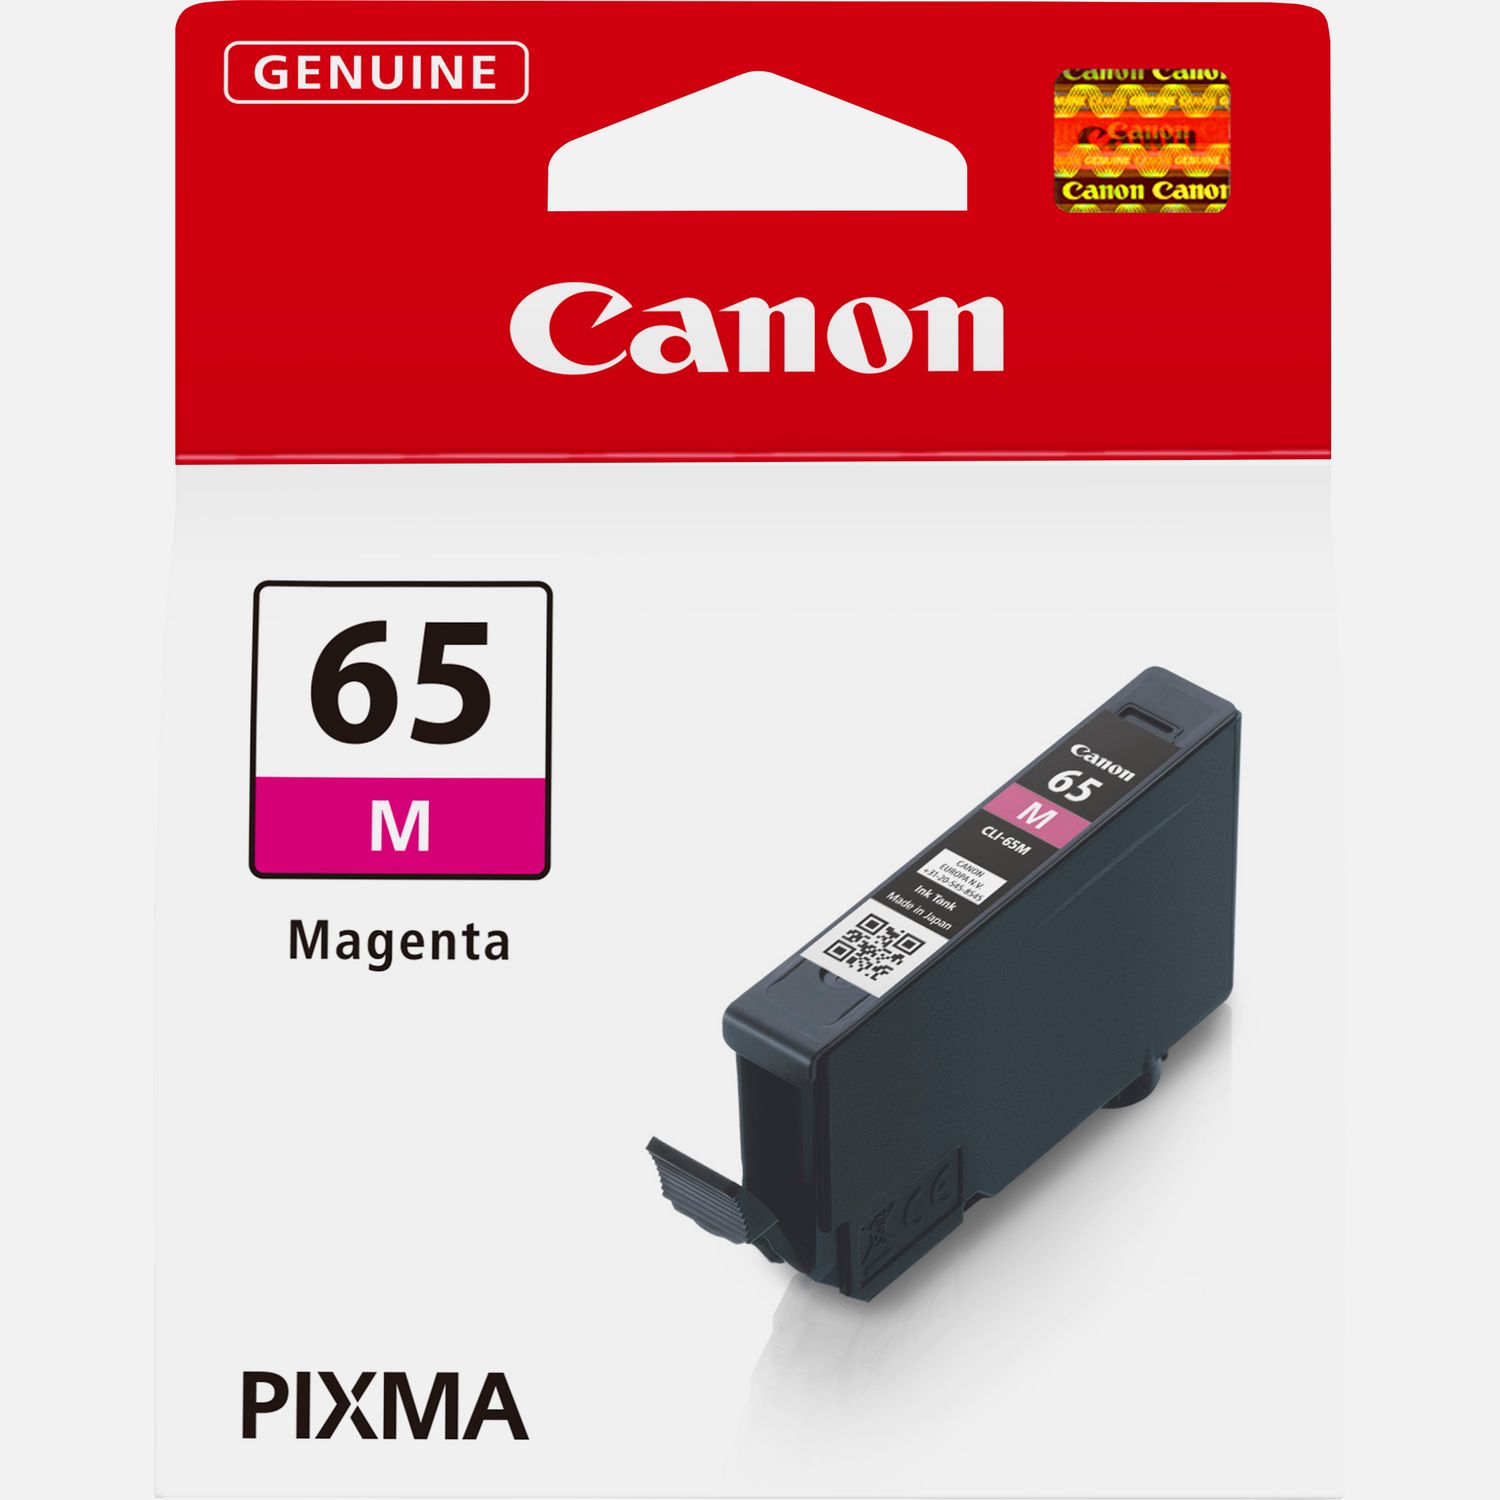 Cartouche d'encre Canon Maxify MB 5100 Series pas cher